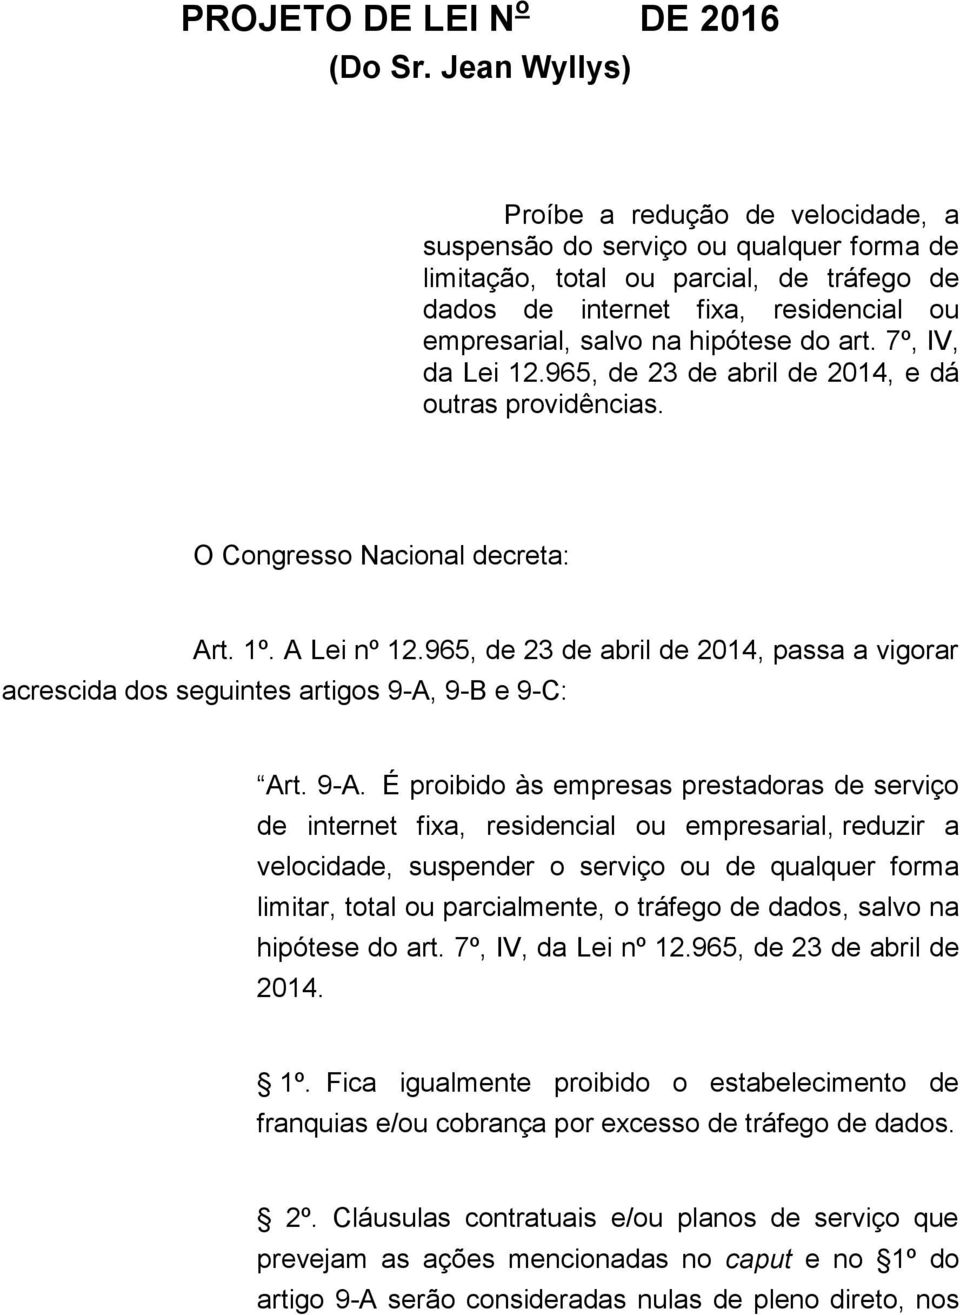 hipótese do art. 7º, IV, da Lei 12.965, de 23 de abril de 2014, e dá outras providências. O Congresso Nacional decreta: Art. 1º. A Lei nº 12.